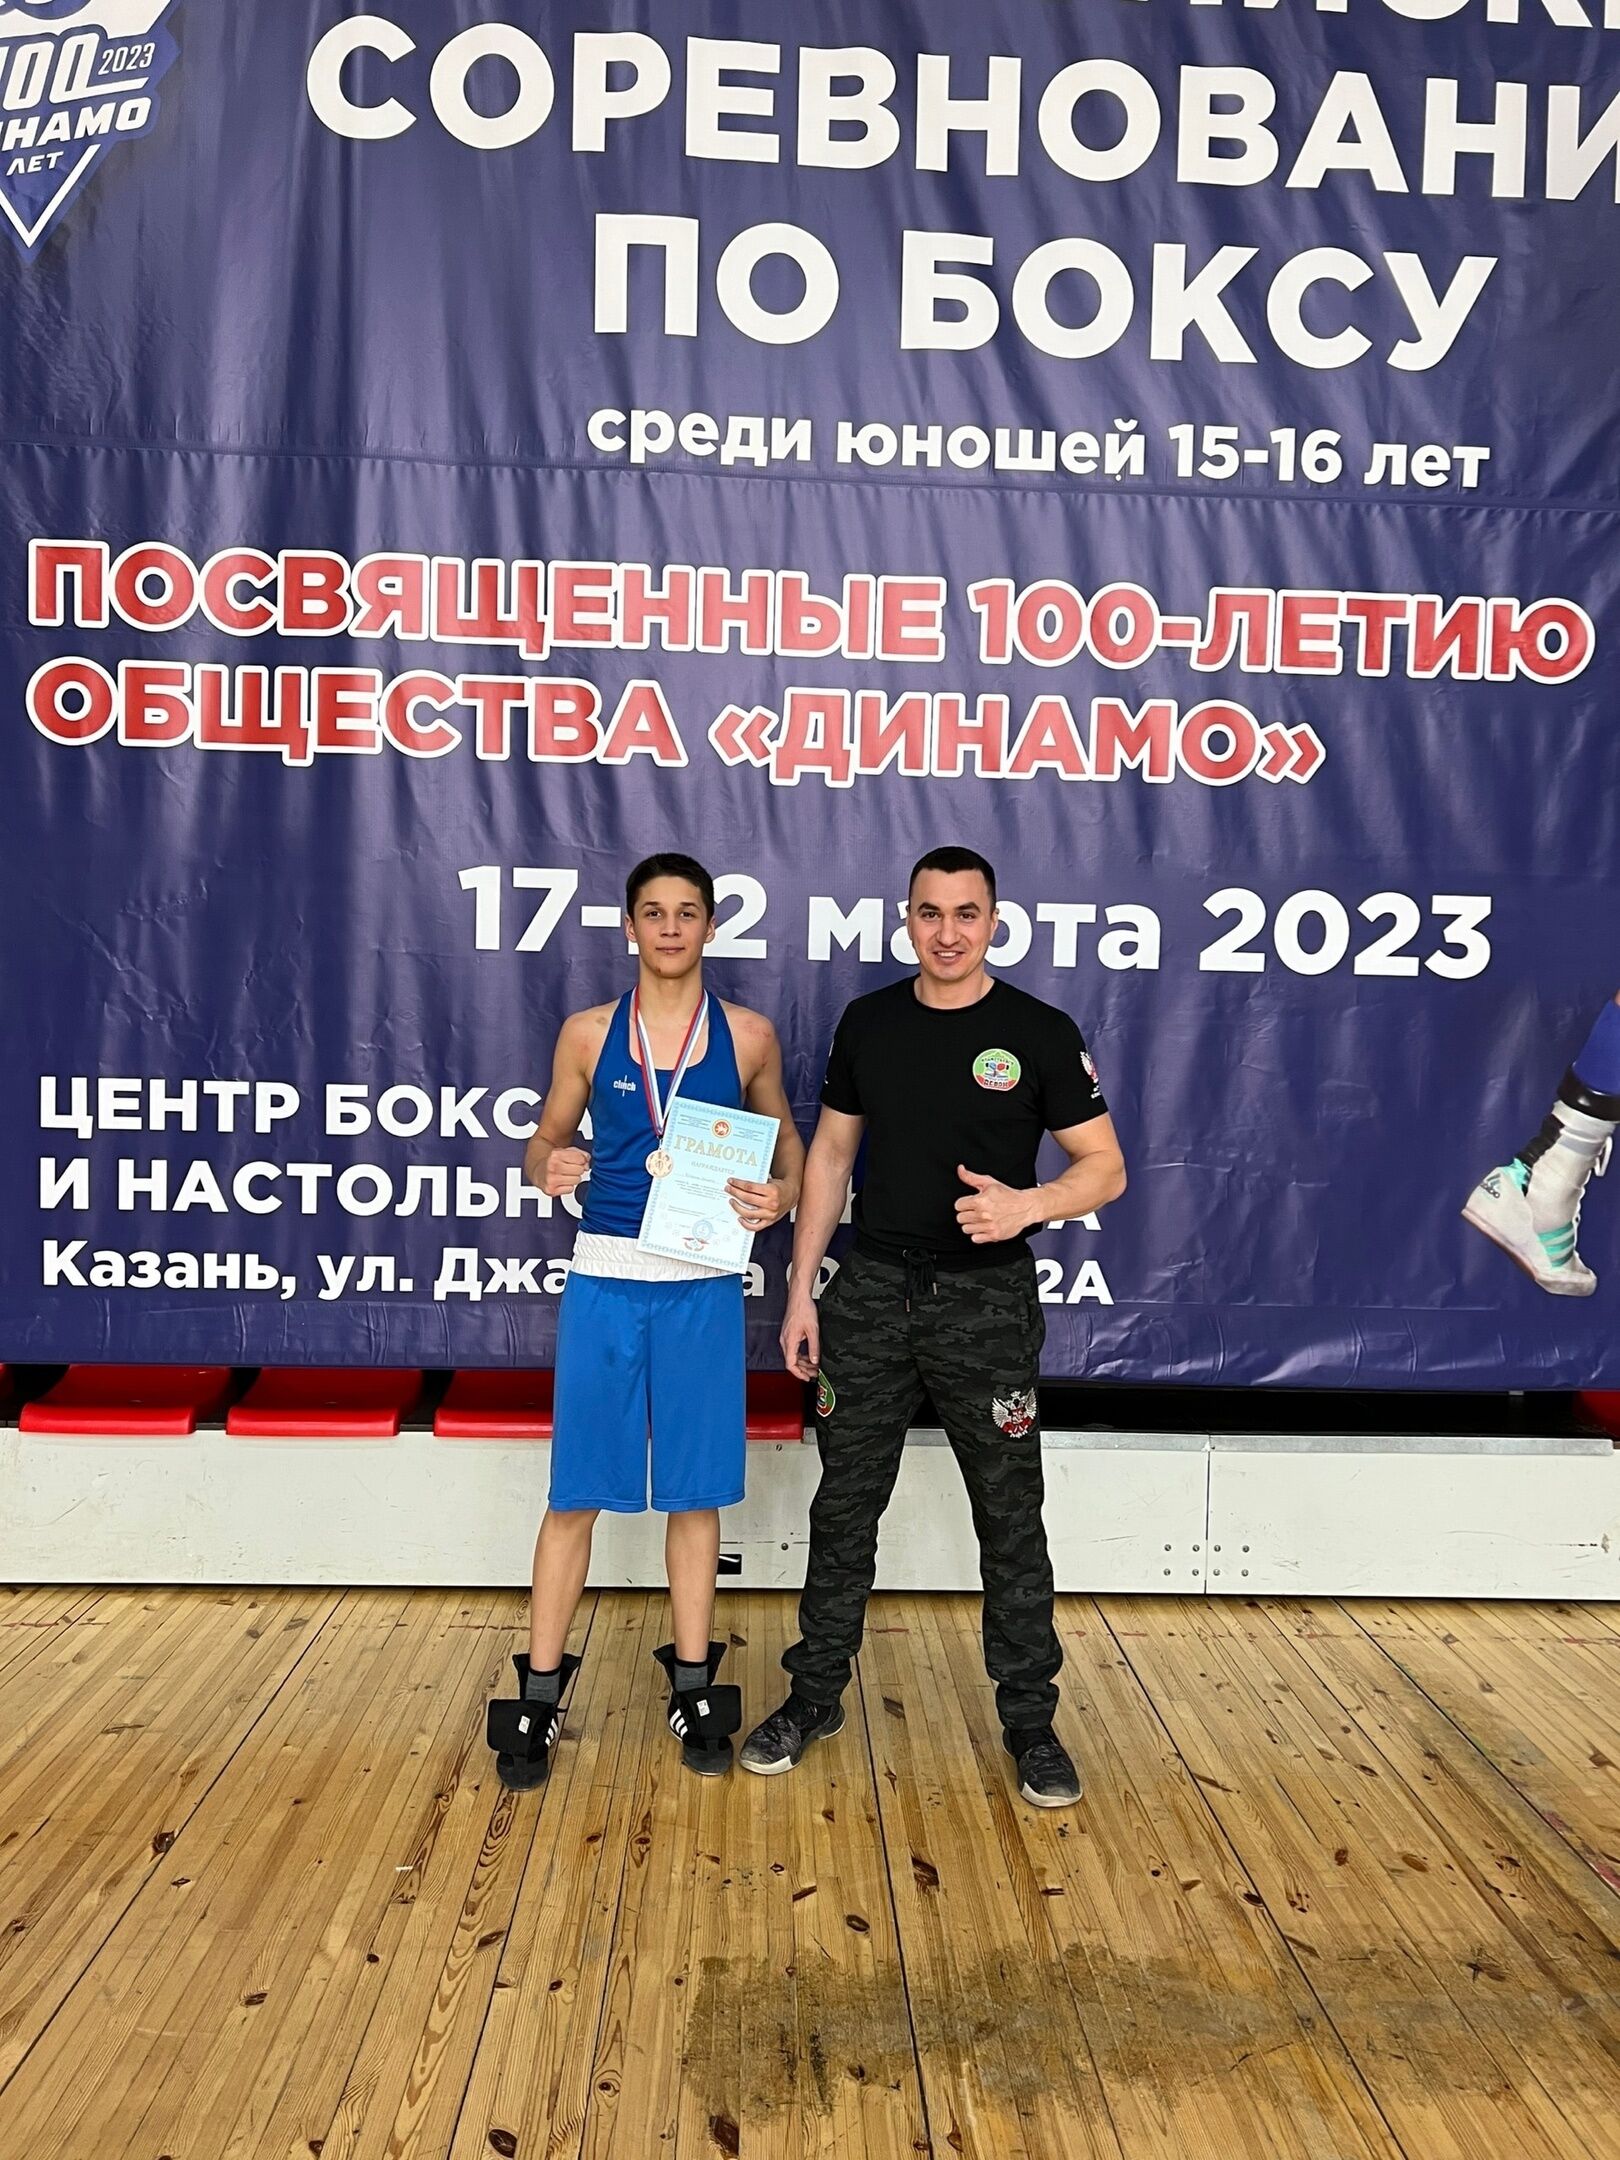 Спортсмен из Альметьевска занял третье место во Всероссийских соревнованиях по боксу